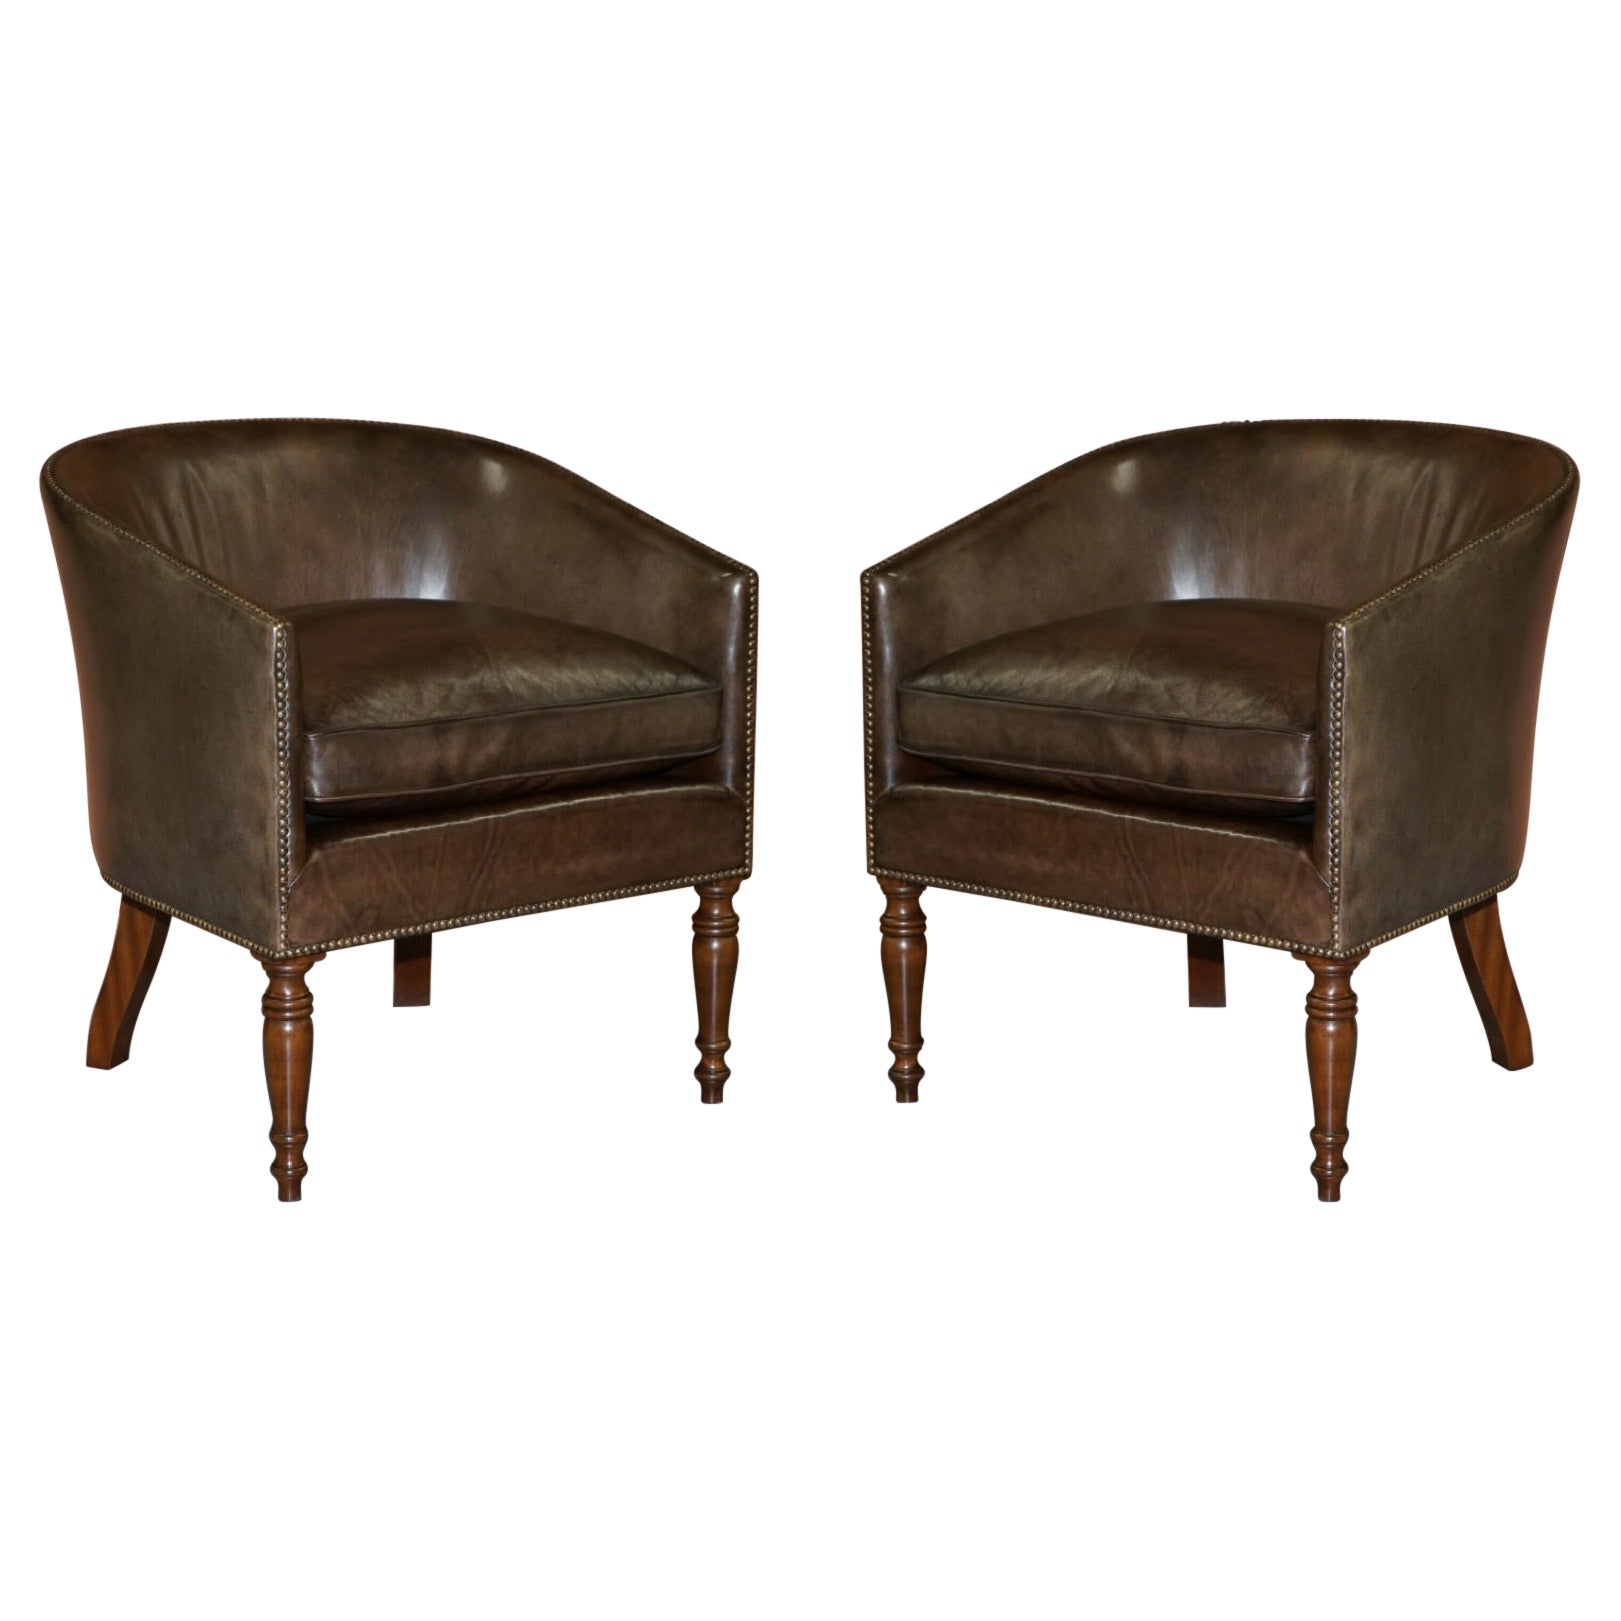 Sublime paire de fauteuils confortables à dossier baril et dossier en cuir marron teints à la main